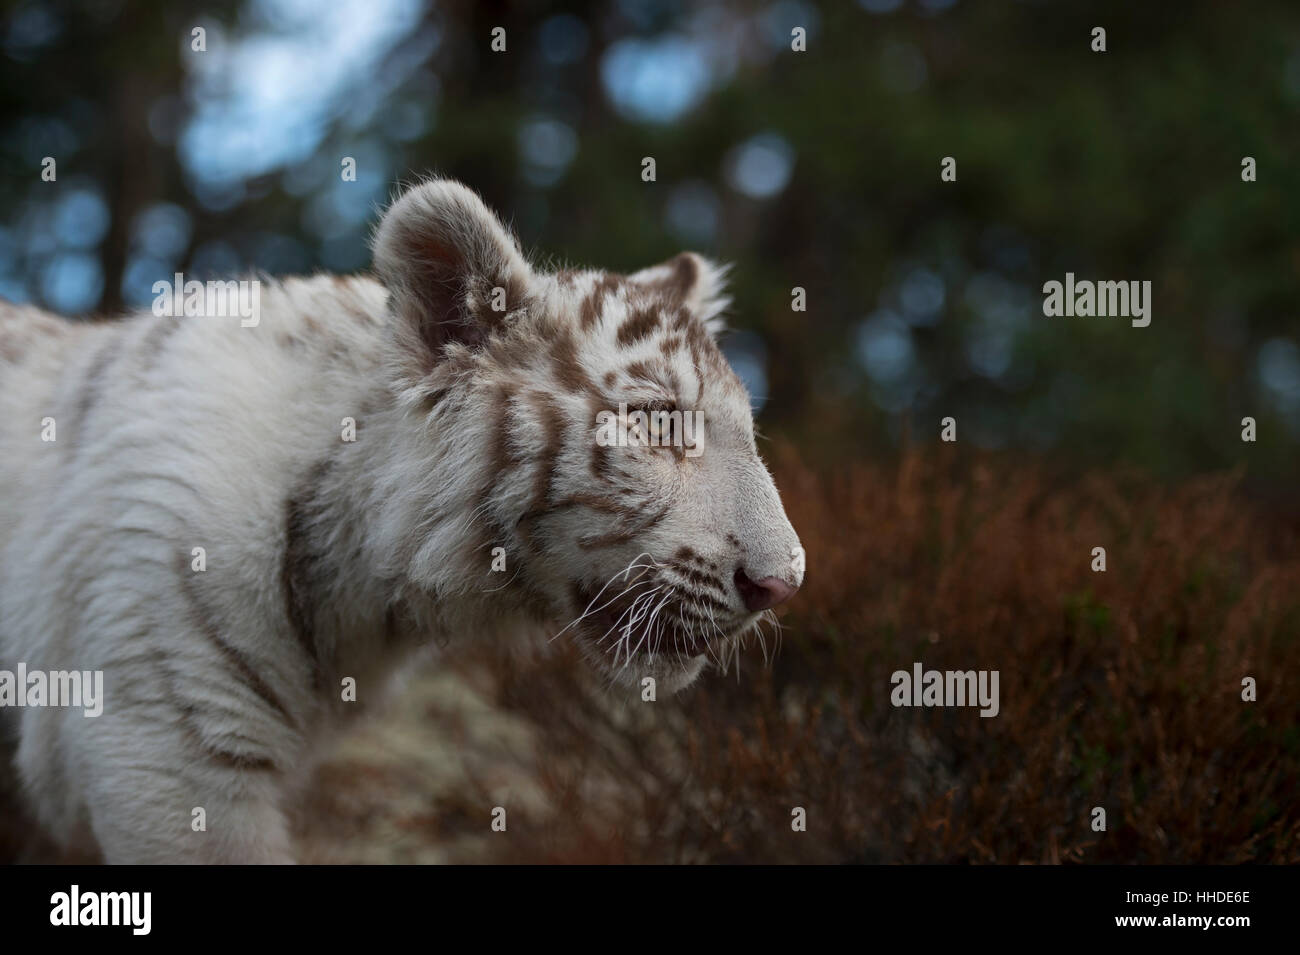 Royal Bengal Tiger / Koenigstiger ( Panthera tigris ), white morph, close-up, headshot, detailed side view, eyes of the tiger. Stock Photo